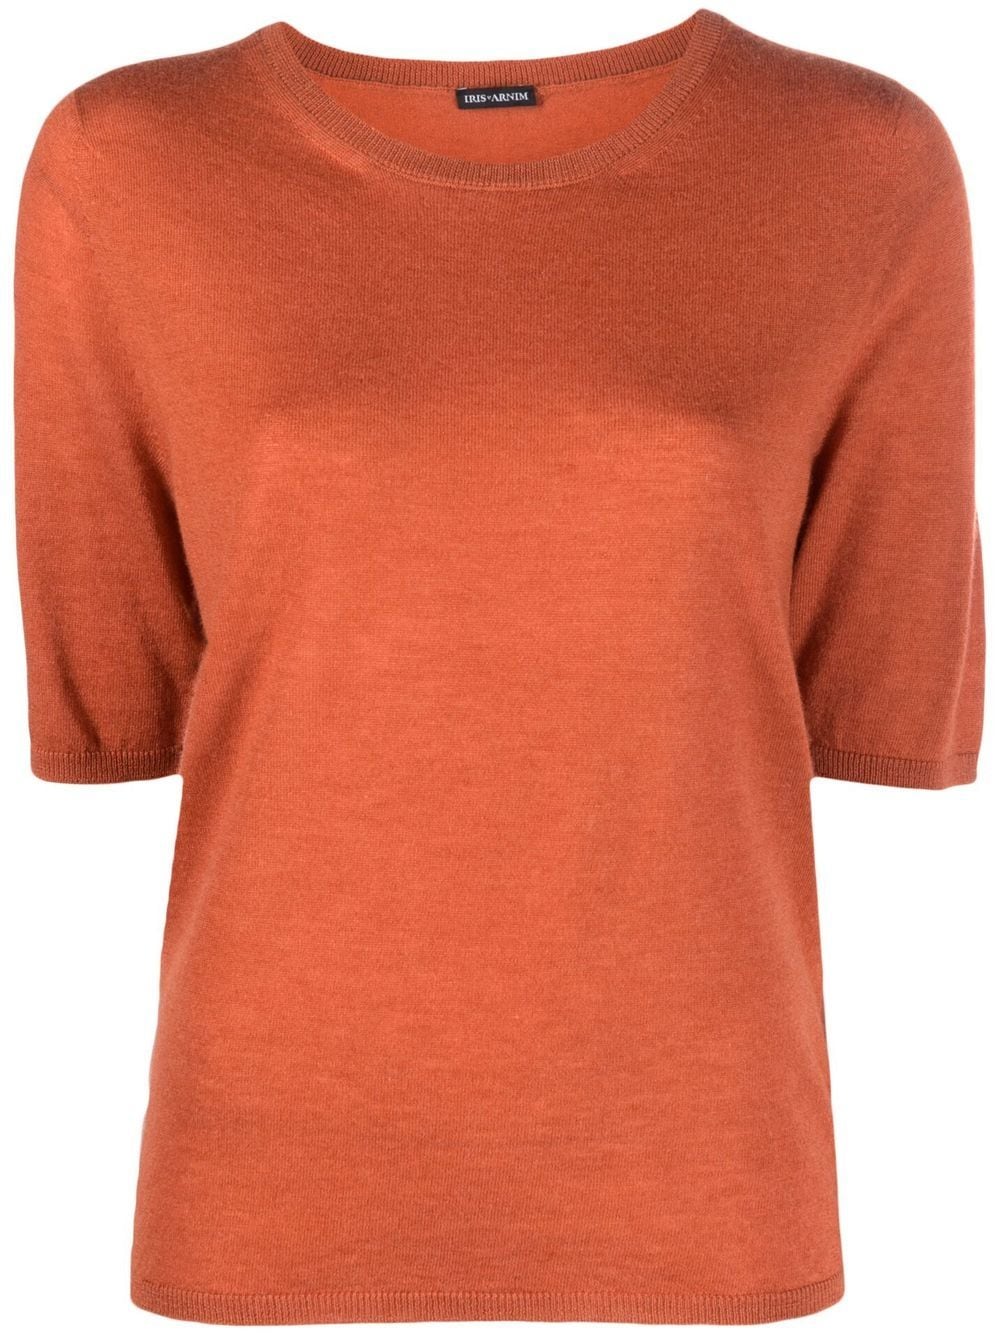 Iris Von Arnim short-sleeved cashmere top - Orange